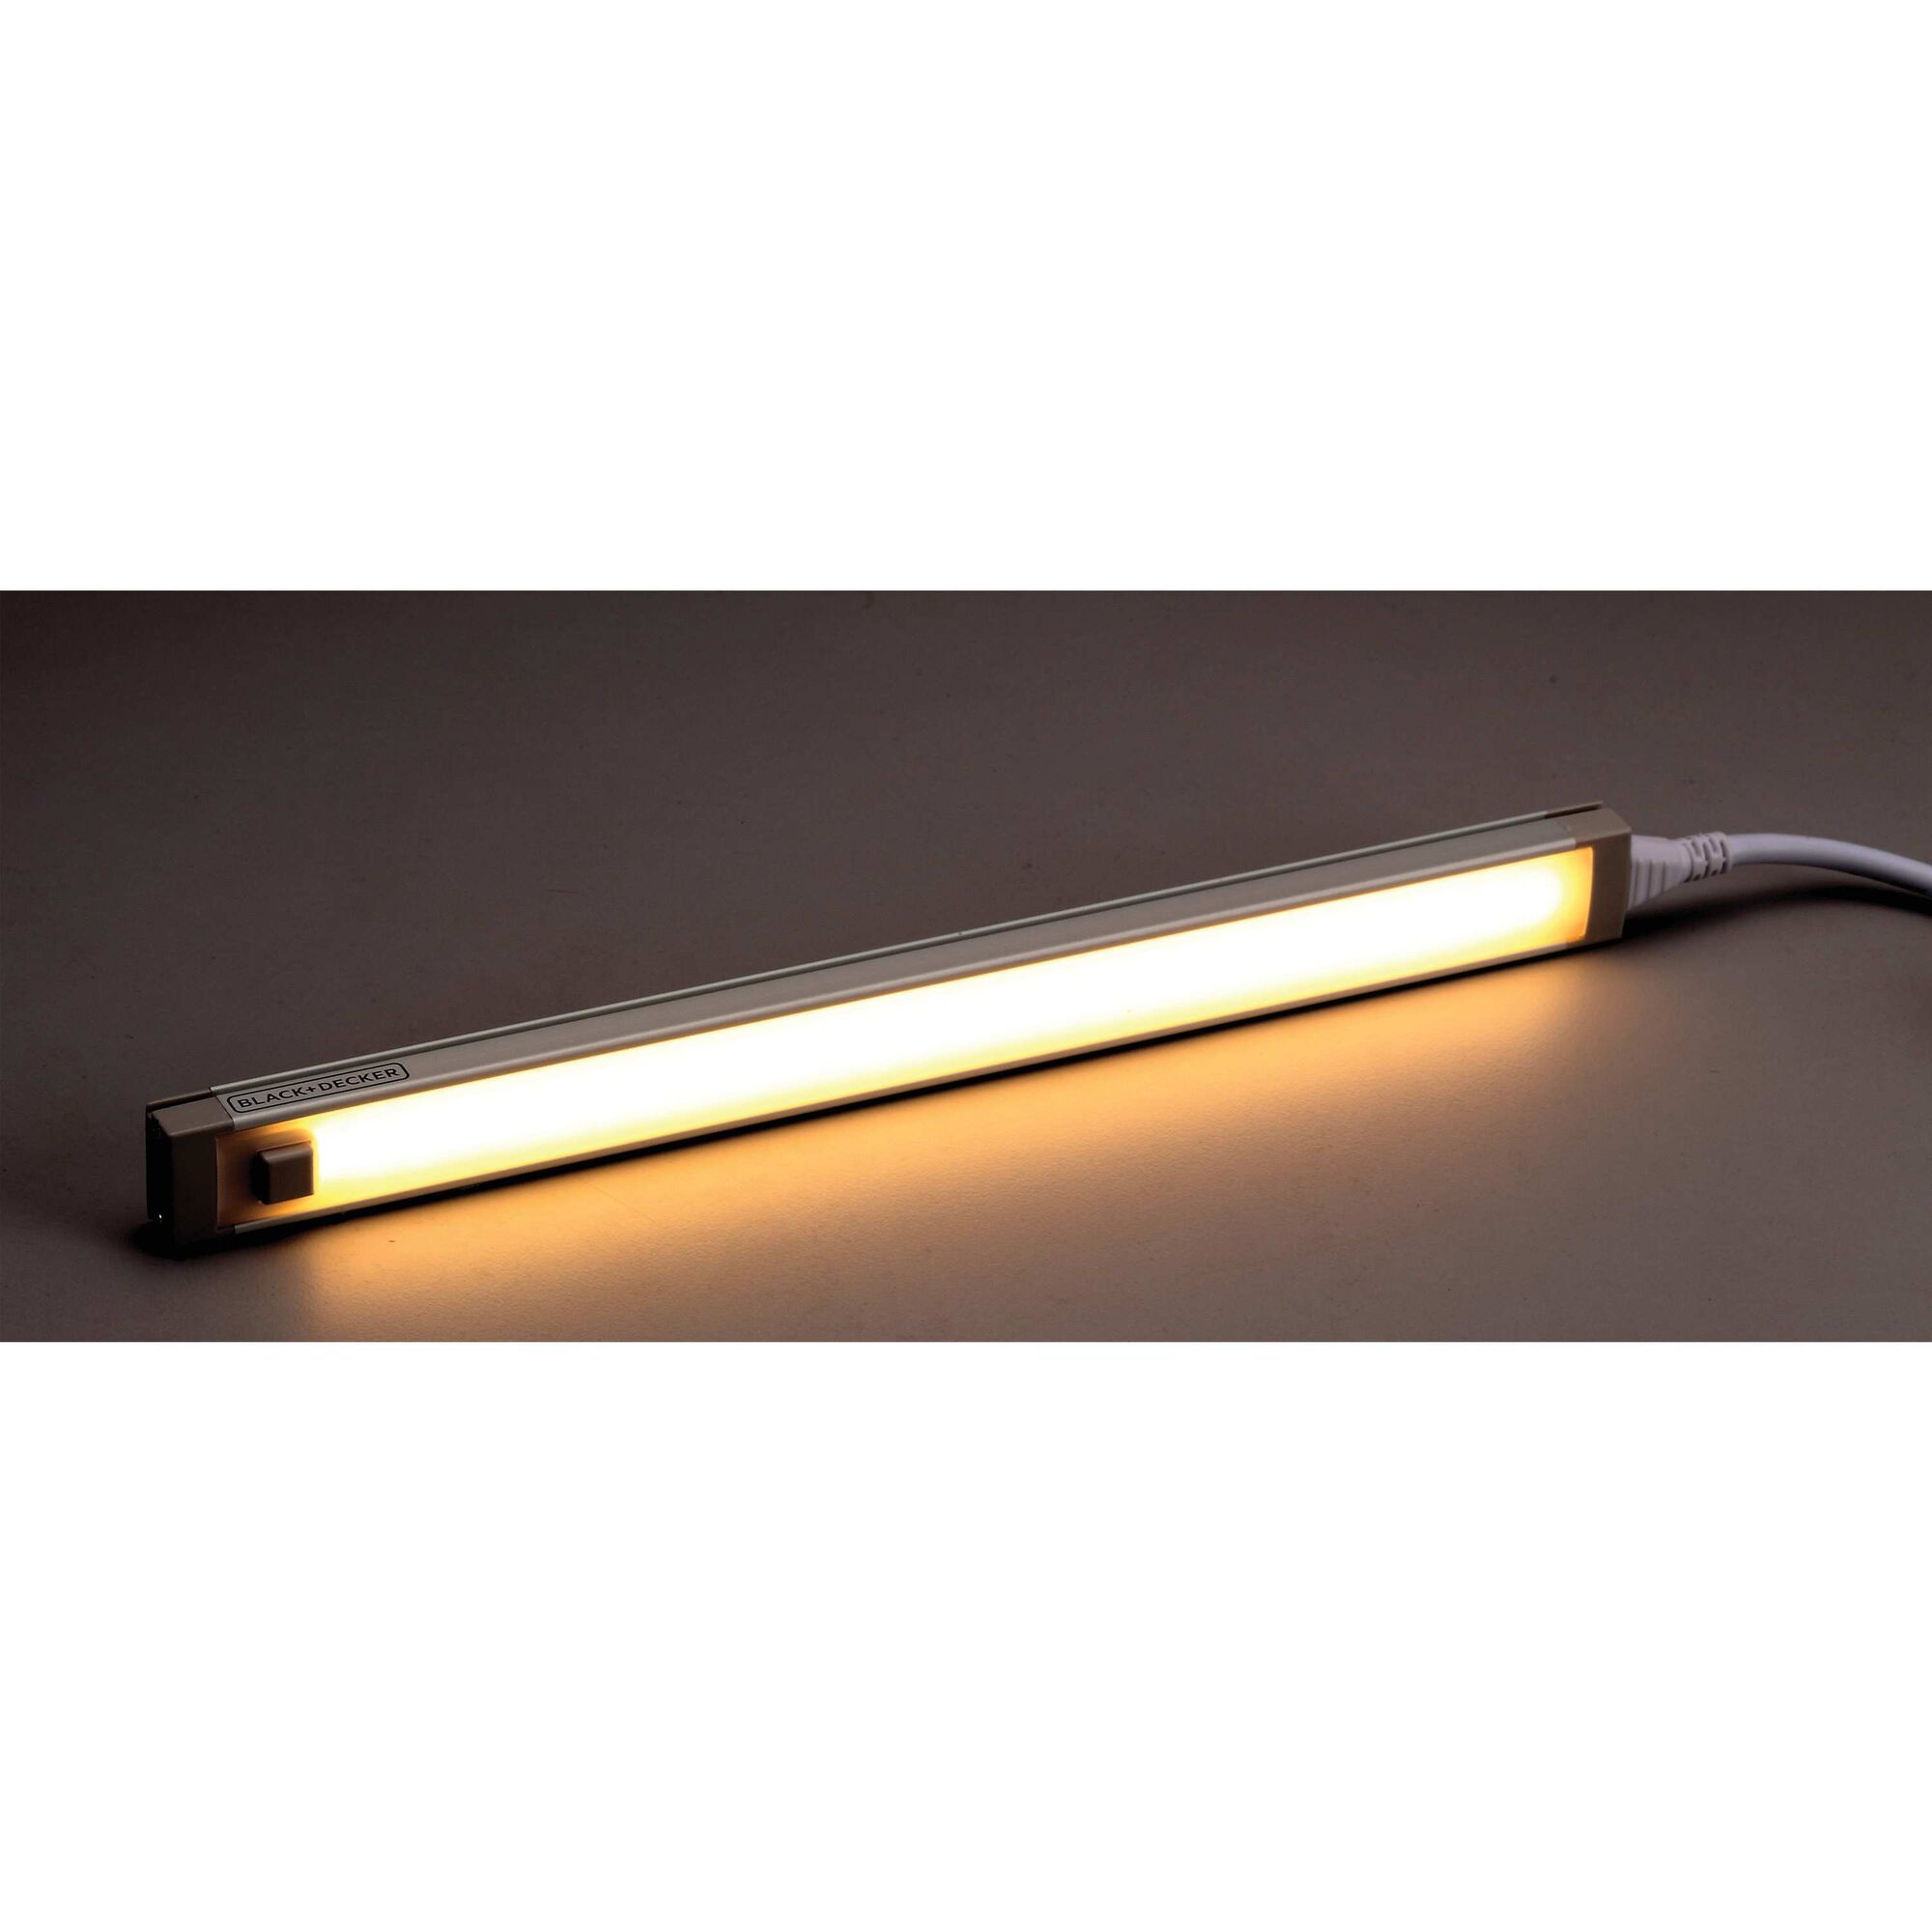 Illuminated 1 bar LED under cabinet light